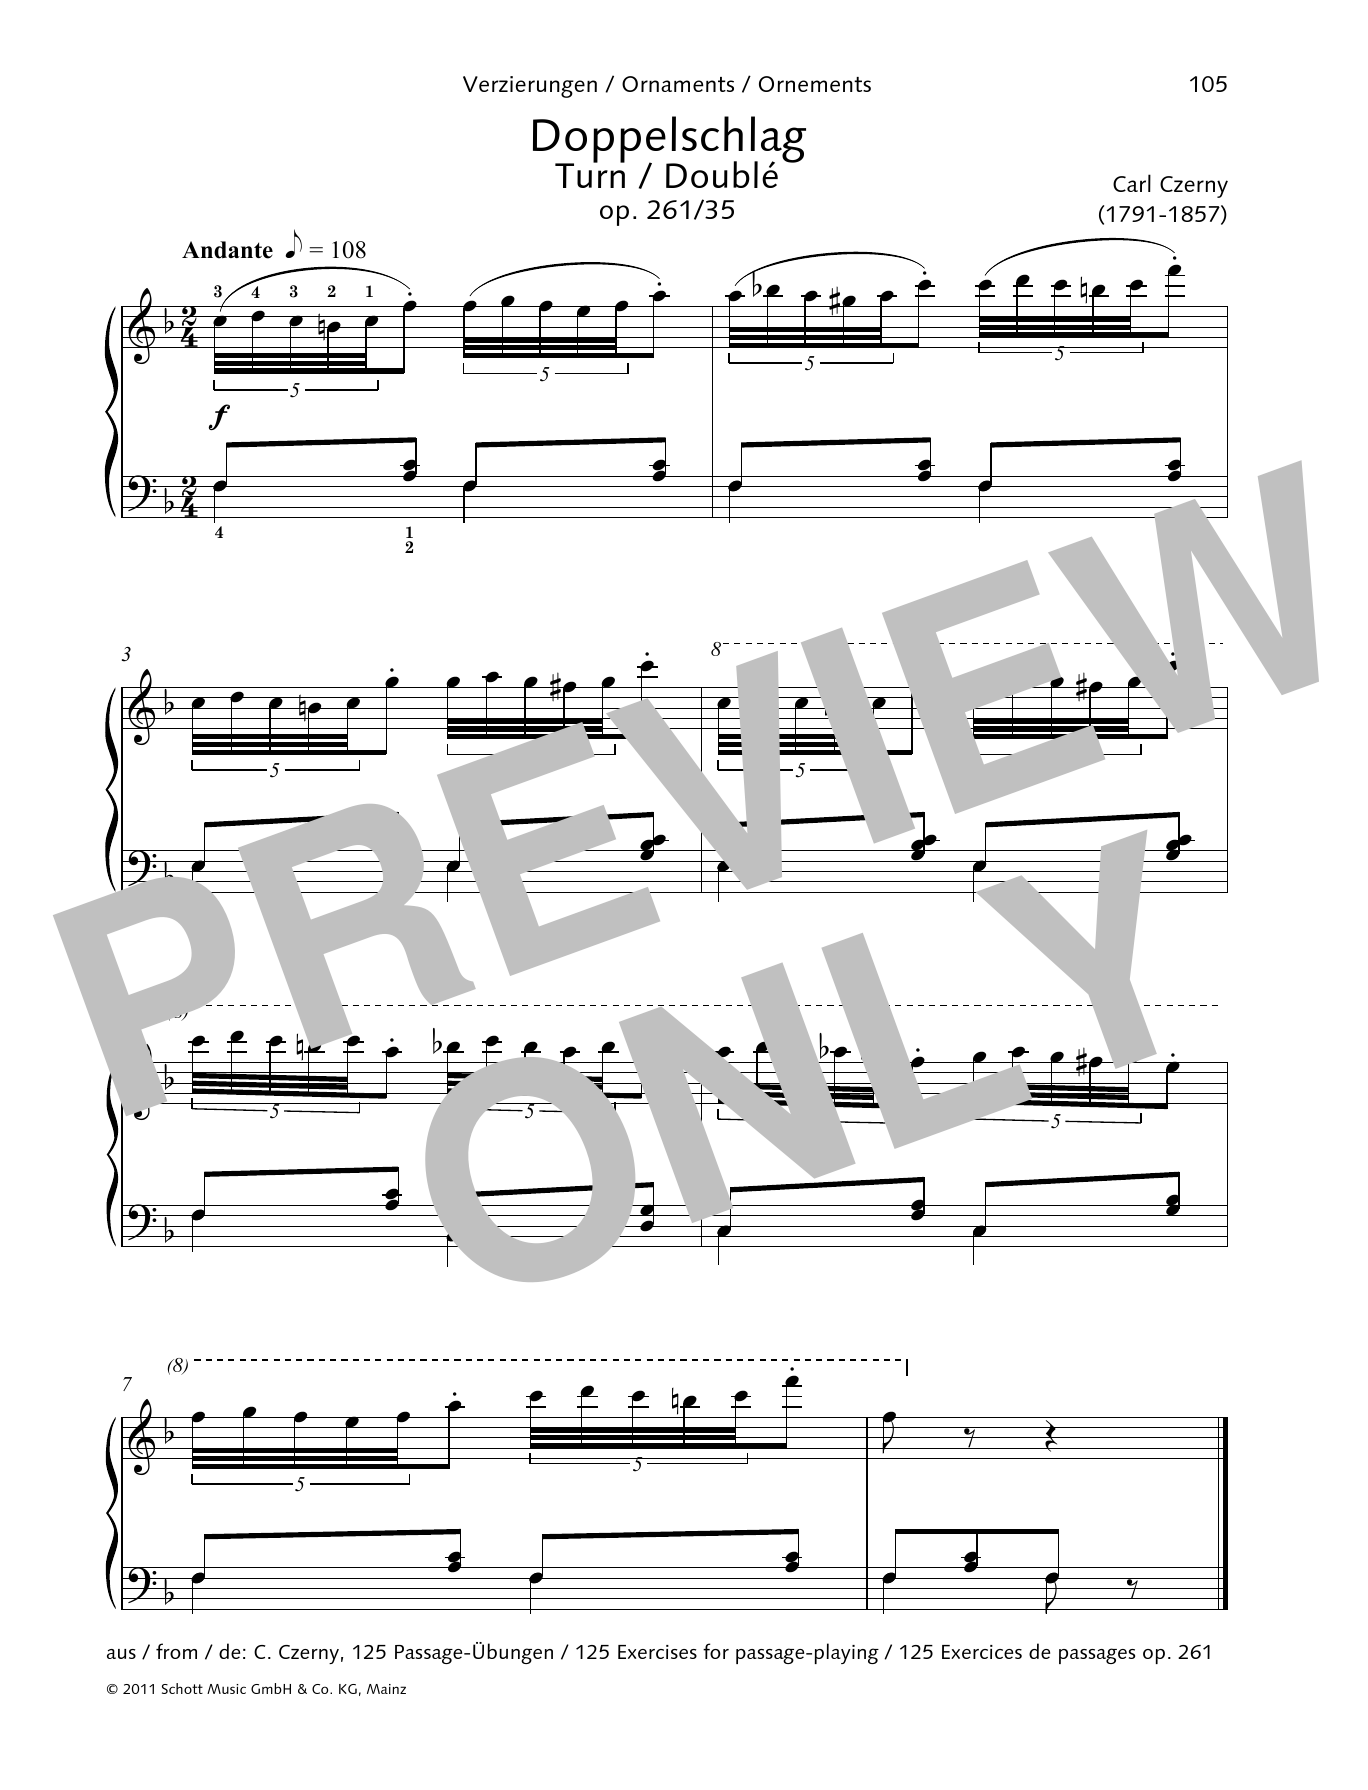 Turn (Piano Solo) von Carl Czerny